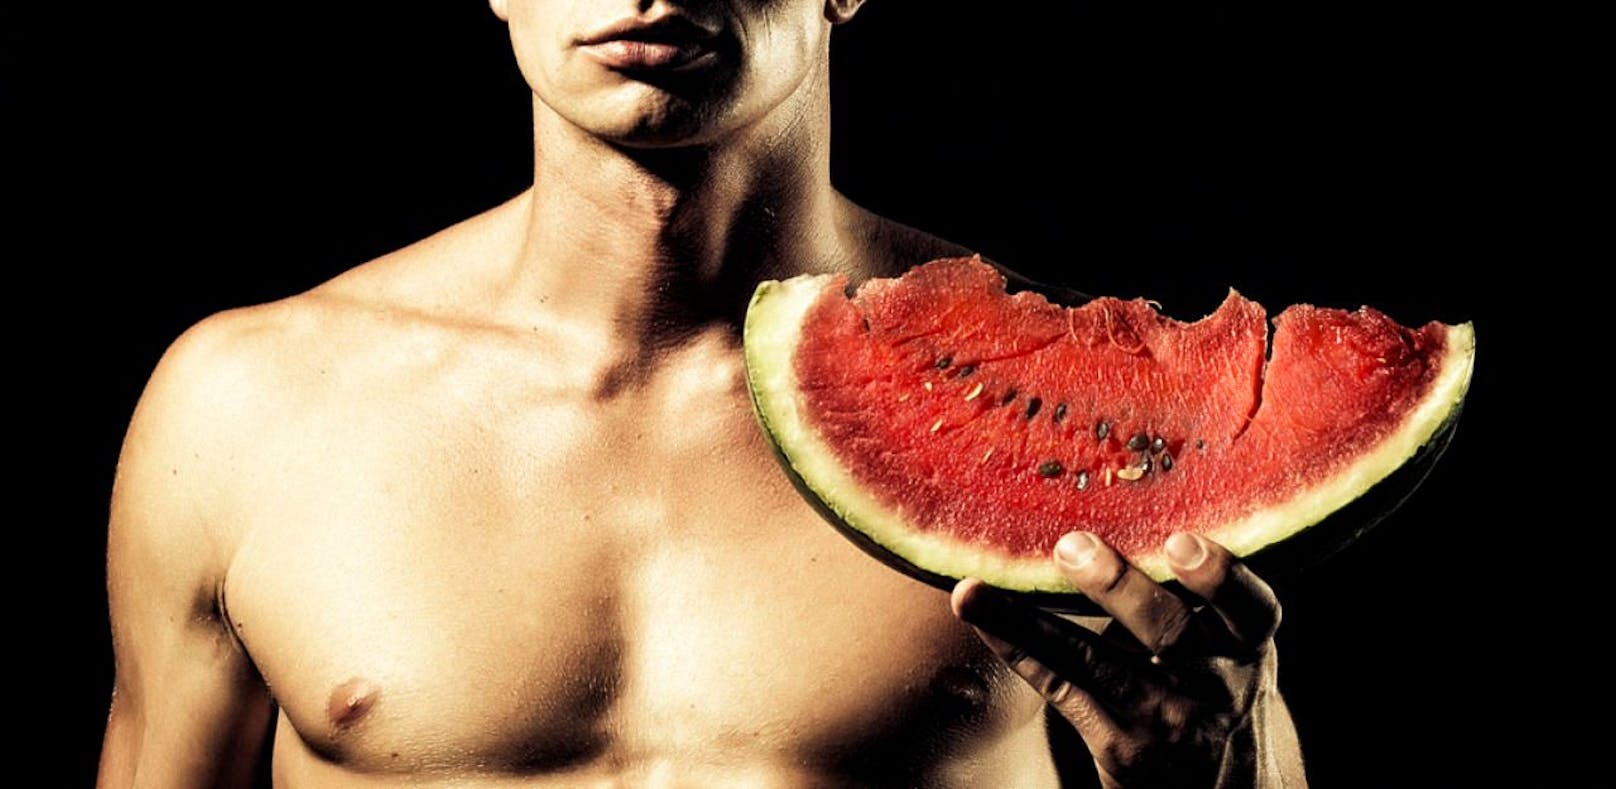 Ein nackter Mann posiert mit Wassermelone. Symbolfoto.